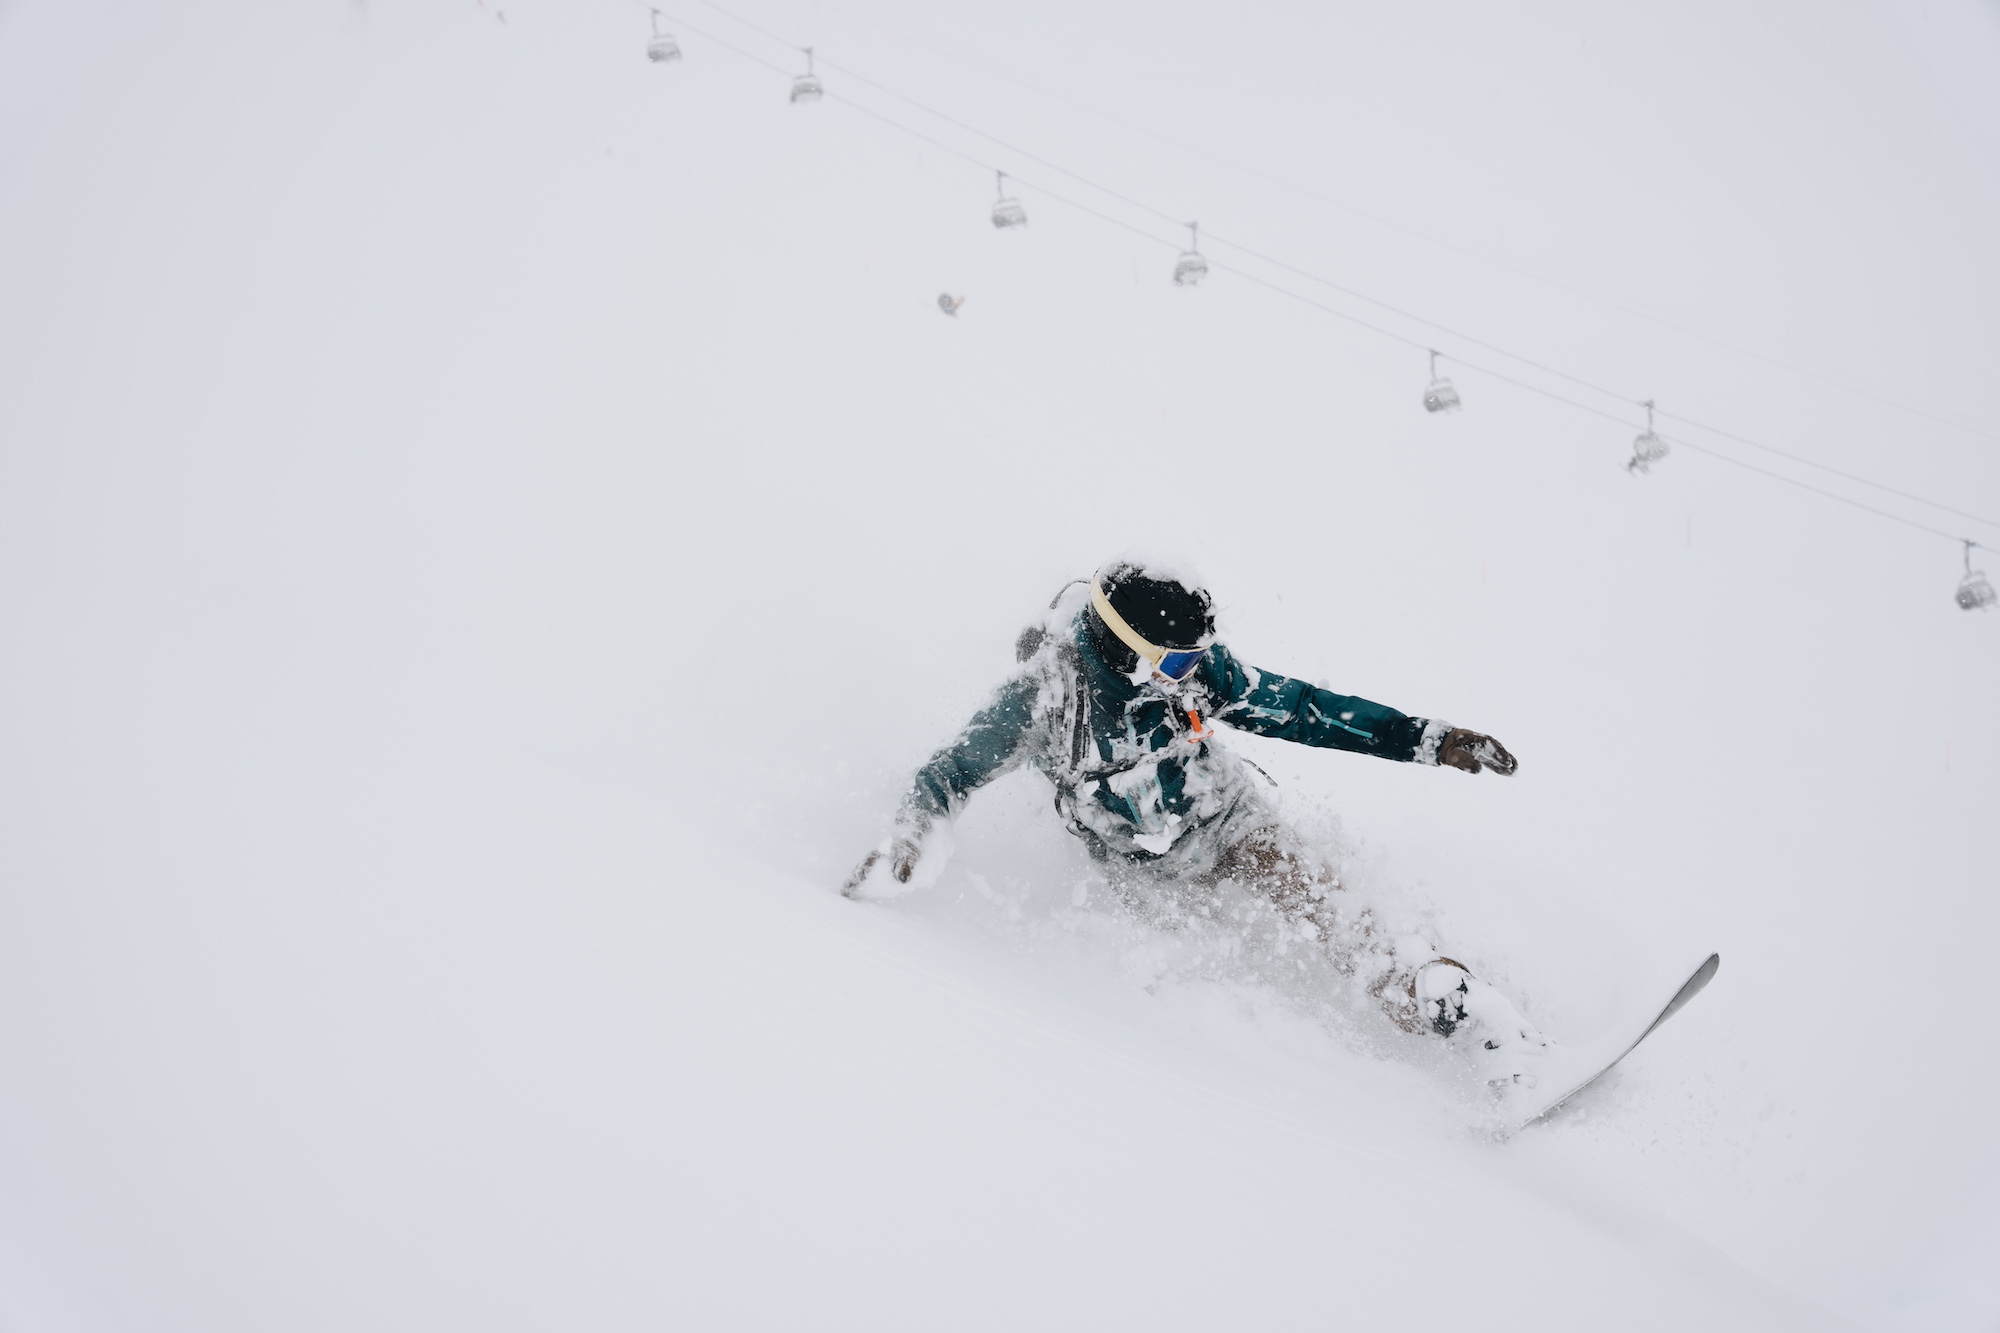 Snowboarder riding through deep powder on a foggy day.